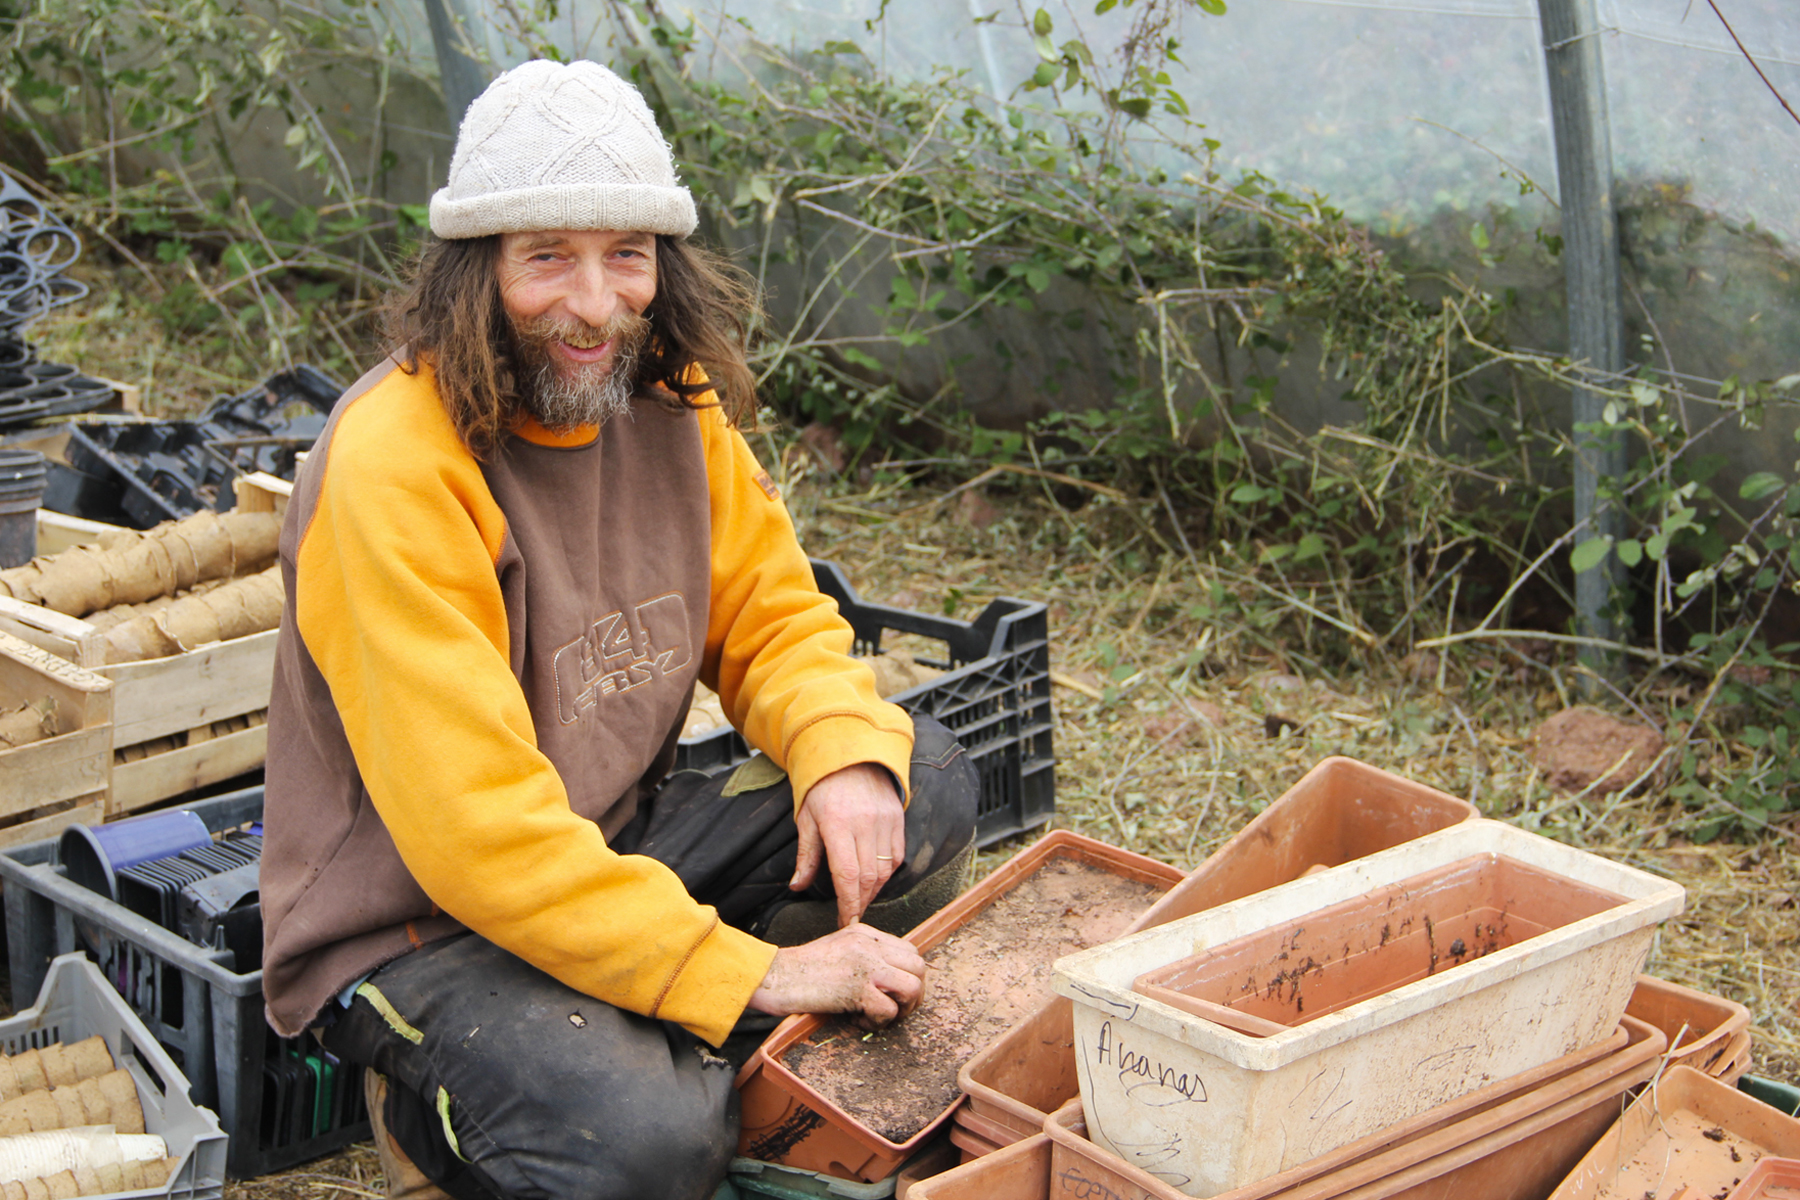 Paskāls Pūks: Šis francūzis, kurš audzē savus dārzeņus BEZ ŪDENS!